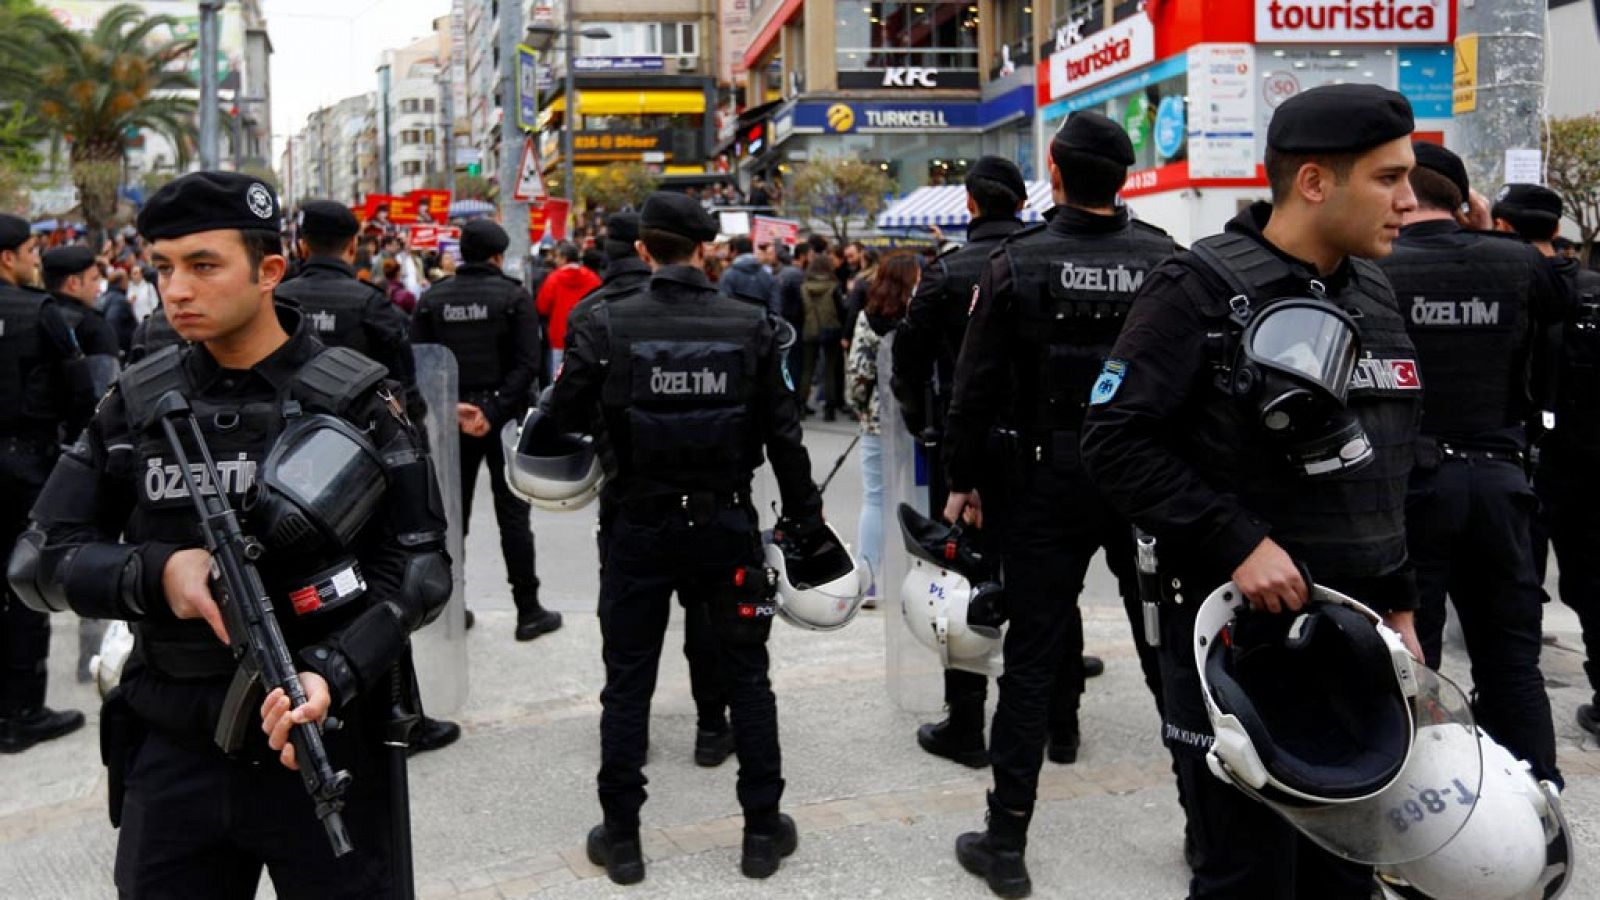 Imagen de archivo de policías turcos durante una protesta anti-gobierno en el districto de Kadikoy, Estambul